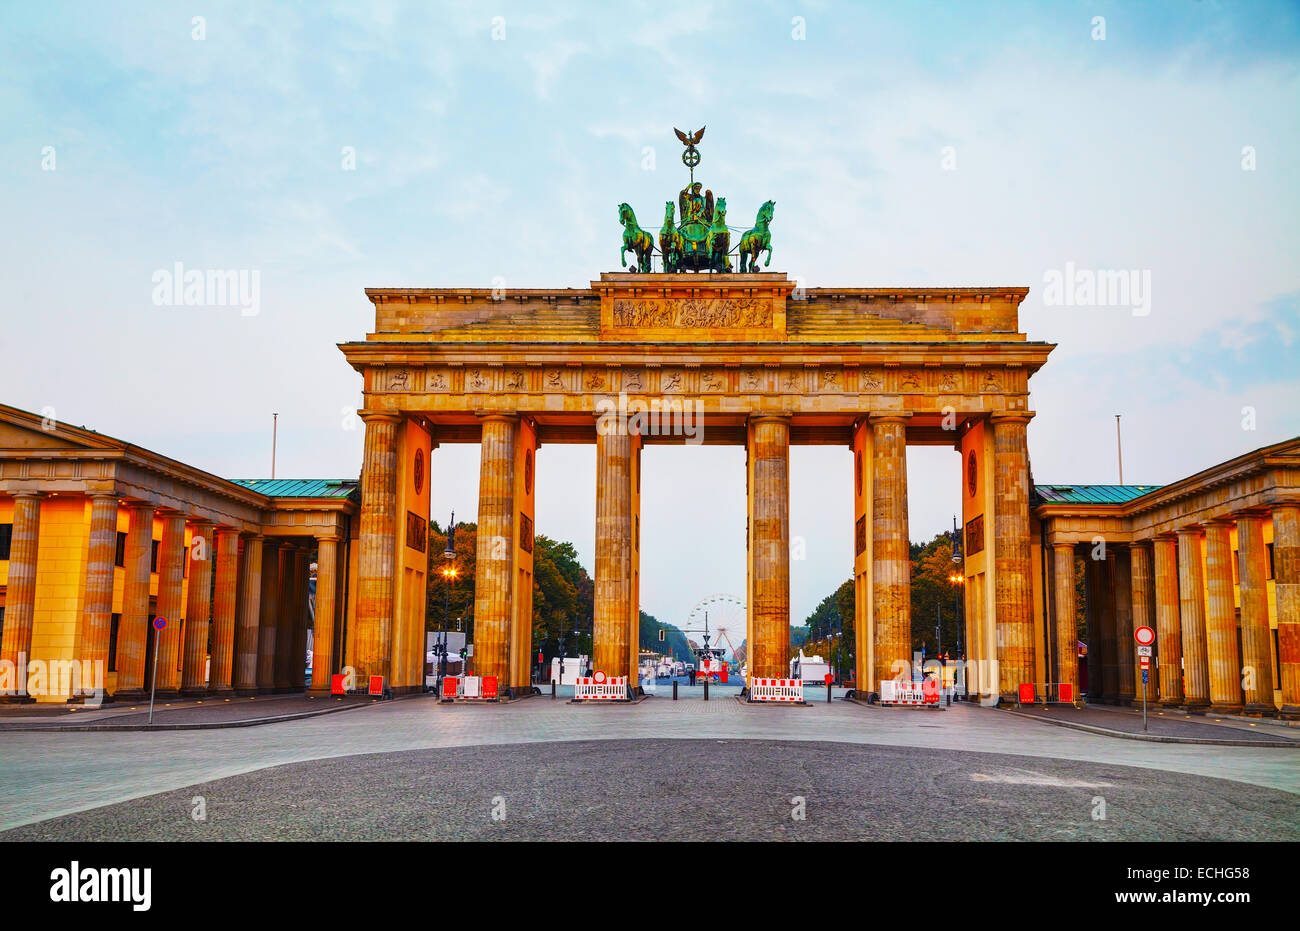 La porta di Brandeburgo (Brandenburger Tor) di Berlino in Germania presso sunrise Foto Stock